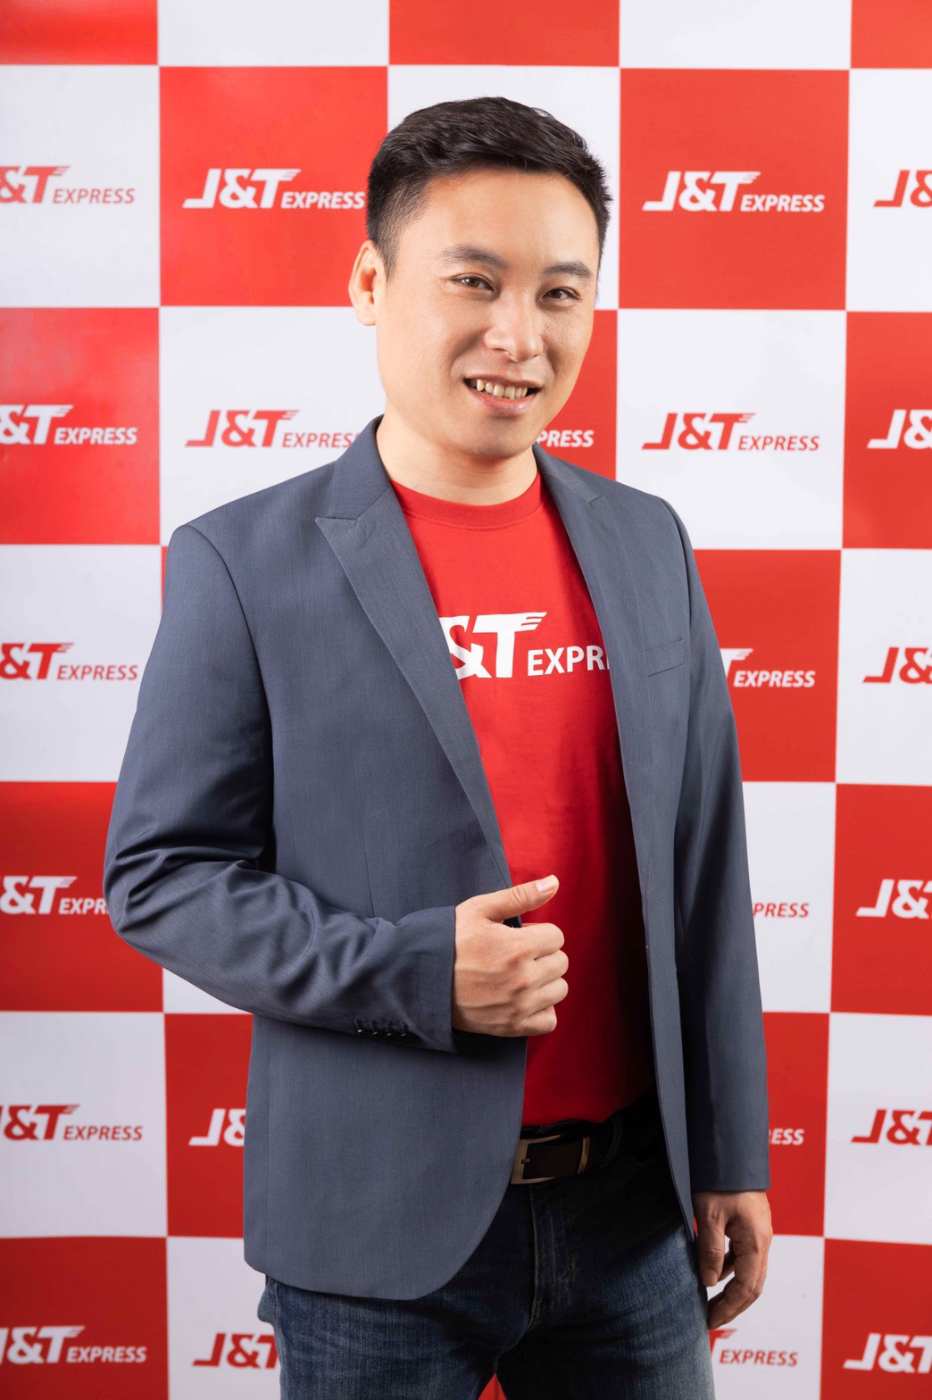 "J&T Express" สร้างฮือฮาครั้งแรกใน"เมืองไทย ด้วยบริการ “เจแอนด์ที เคลมไวในวันถัดไป” มั่นใจ ไร้กังวล